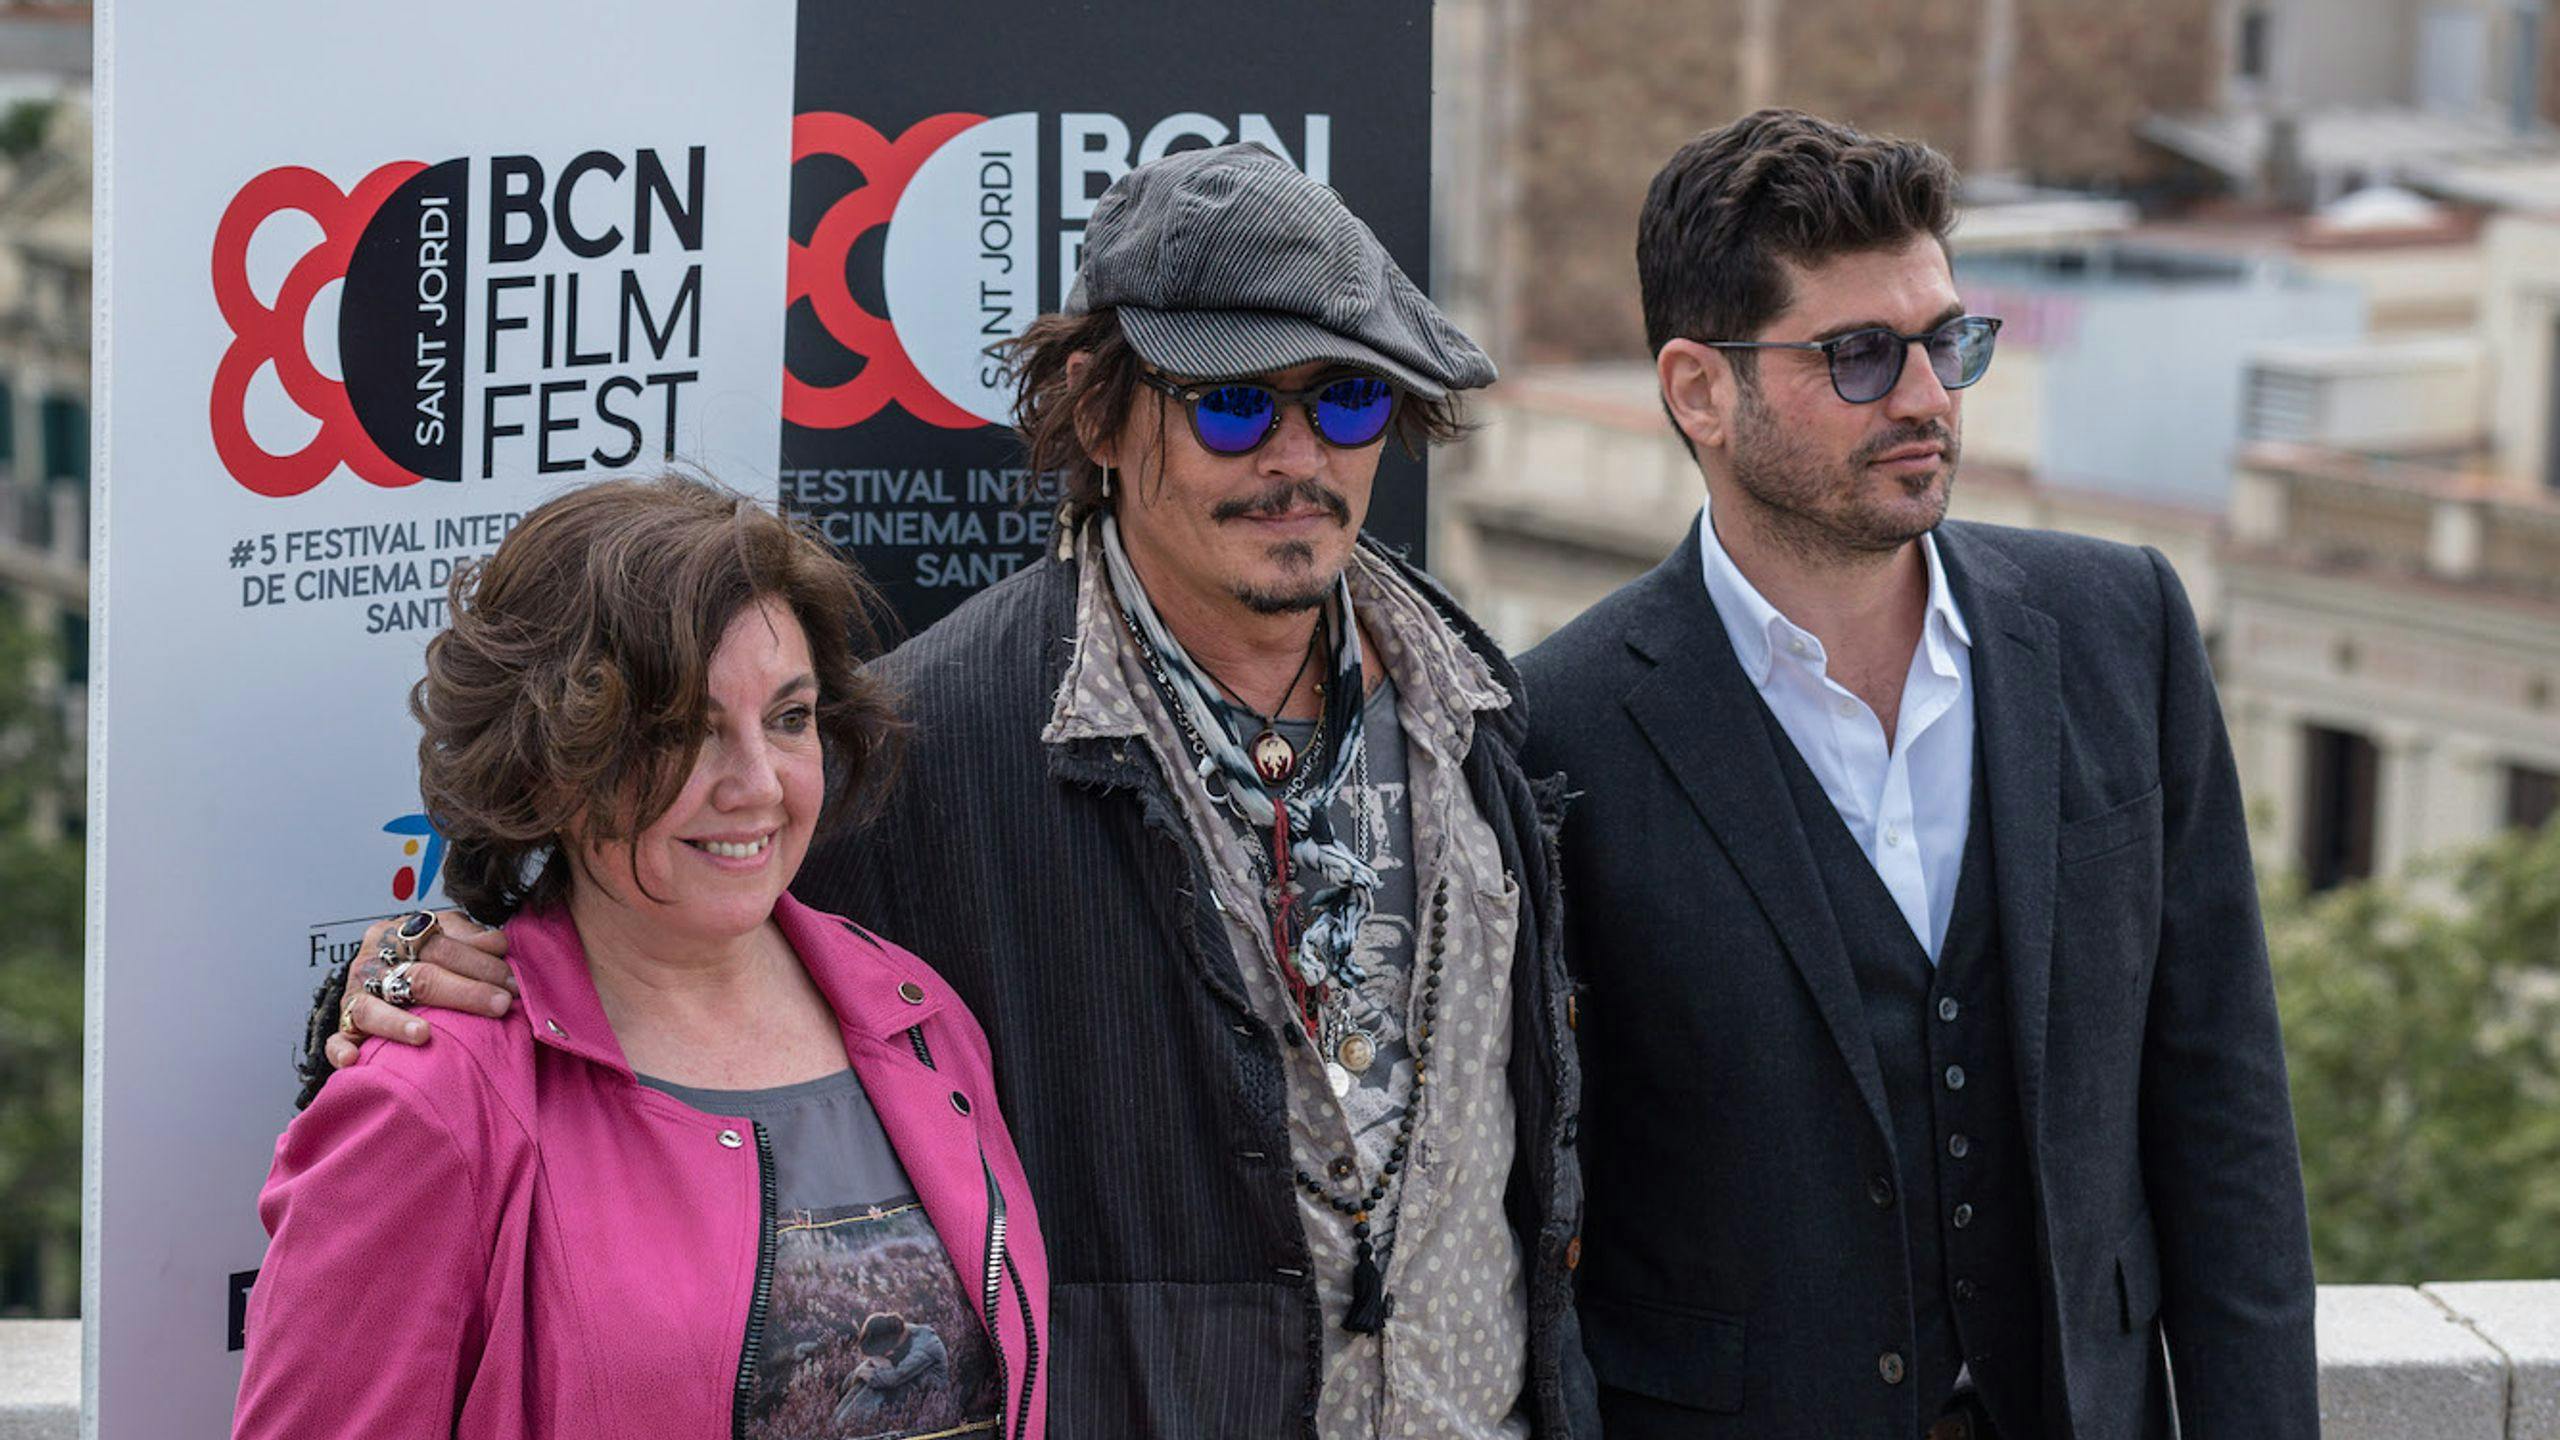 Conxita Casanovas y Johnny Depp en la presentación de 'El fotógrafo de Minimata' en el BCN Film Fest